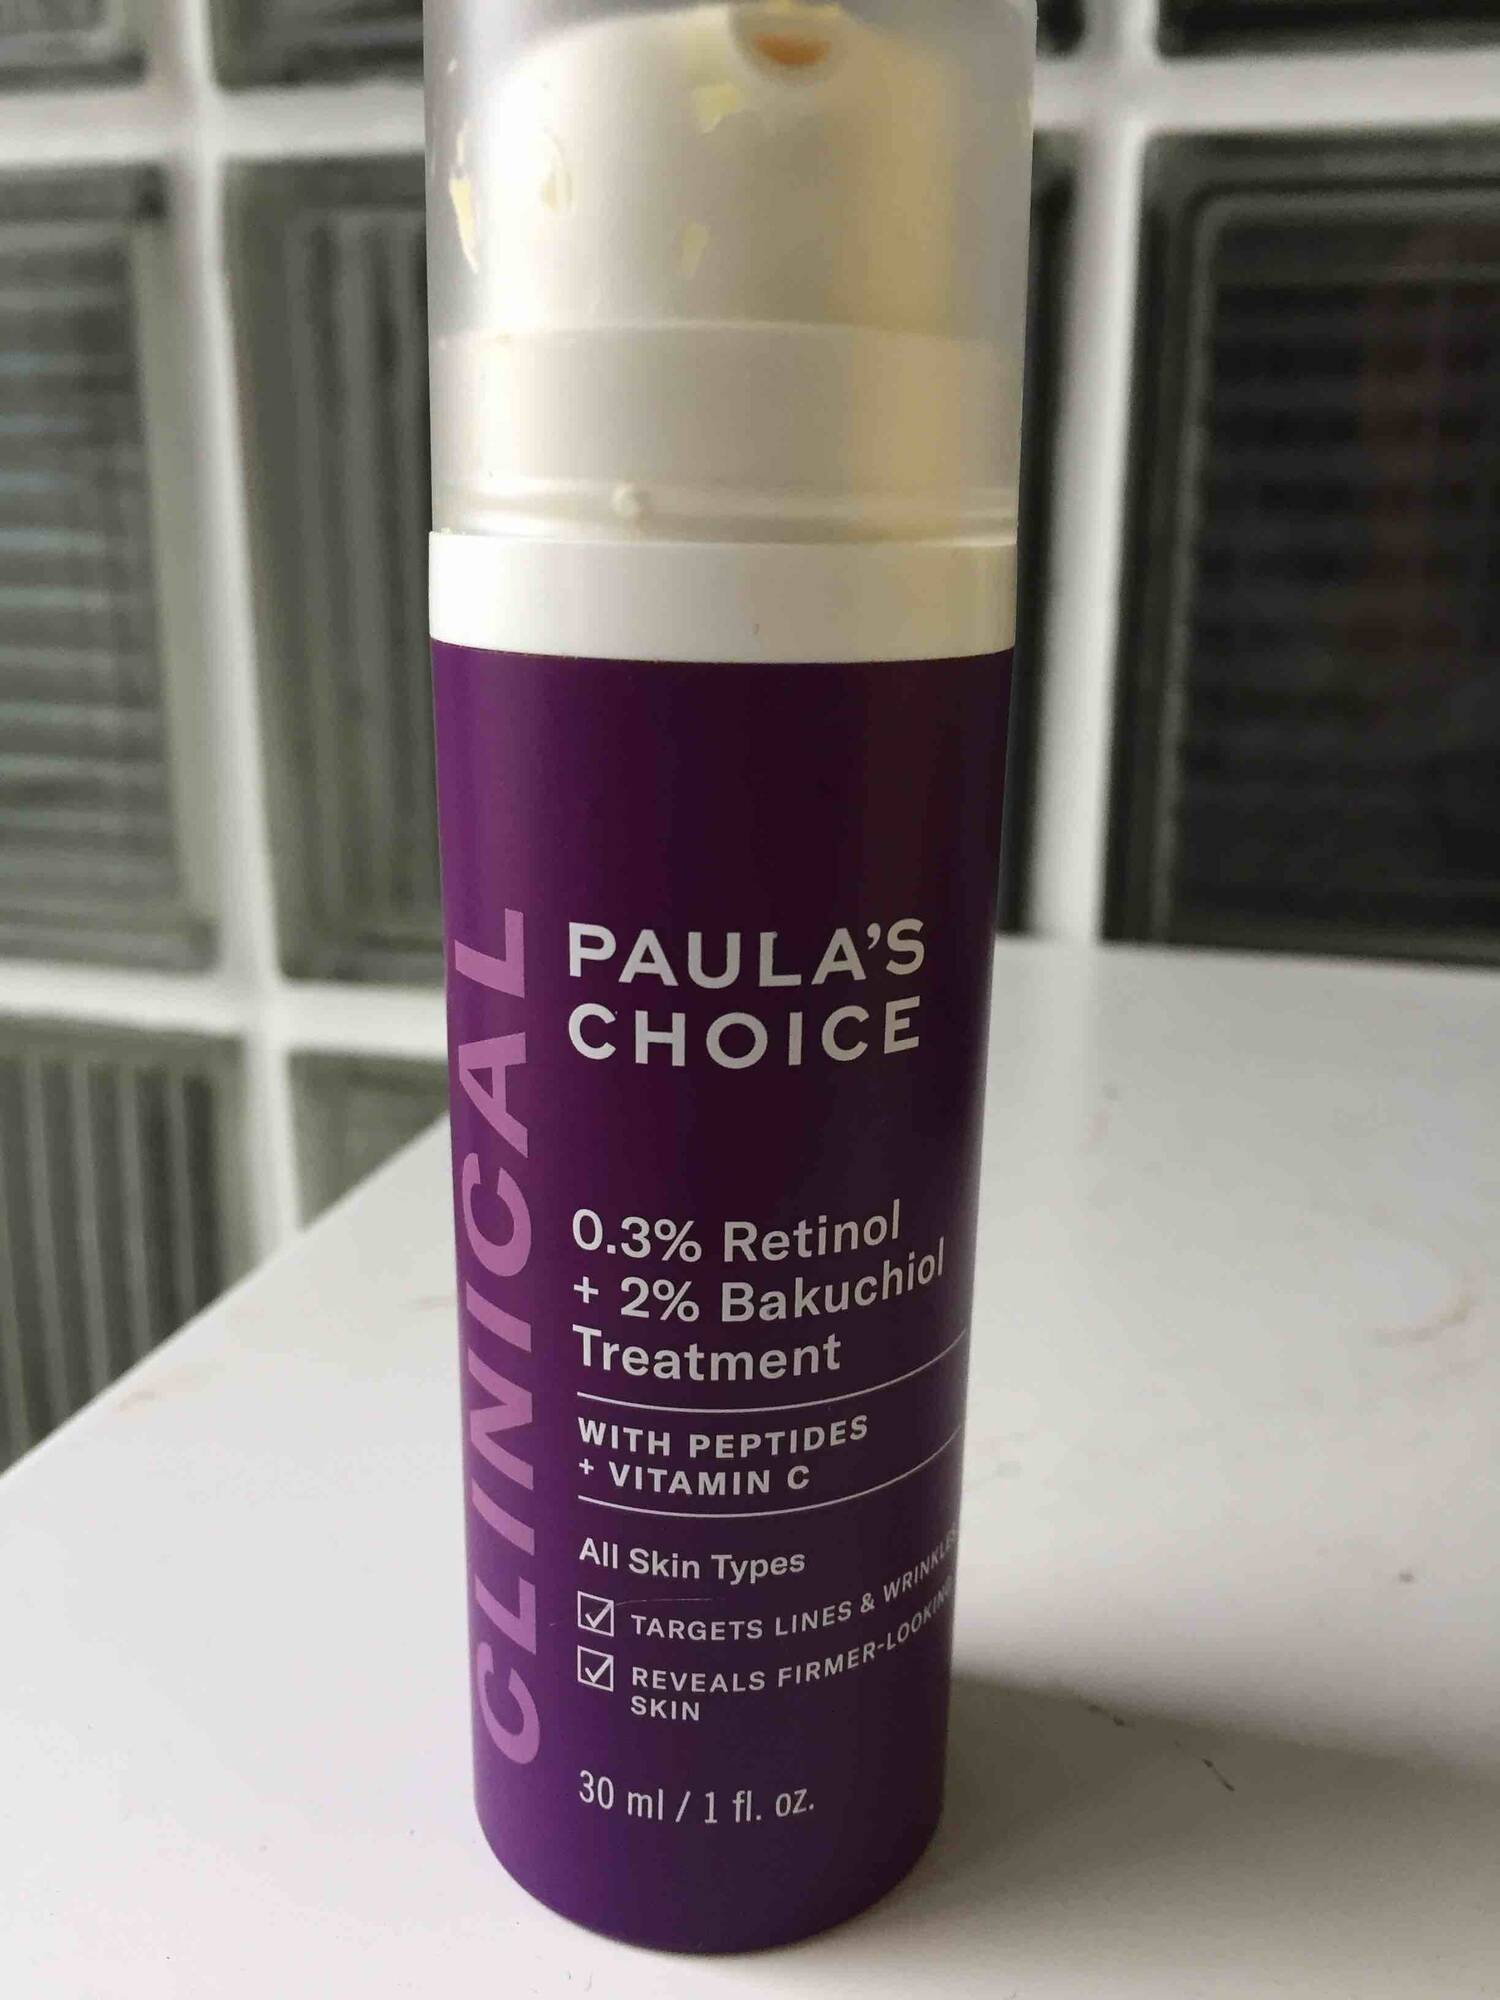 PAULA'S CHOICE - Clinical 0.3% retinol + 2% bakuchiol treatment